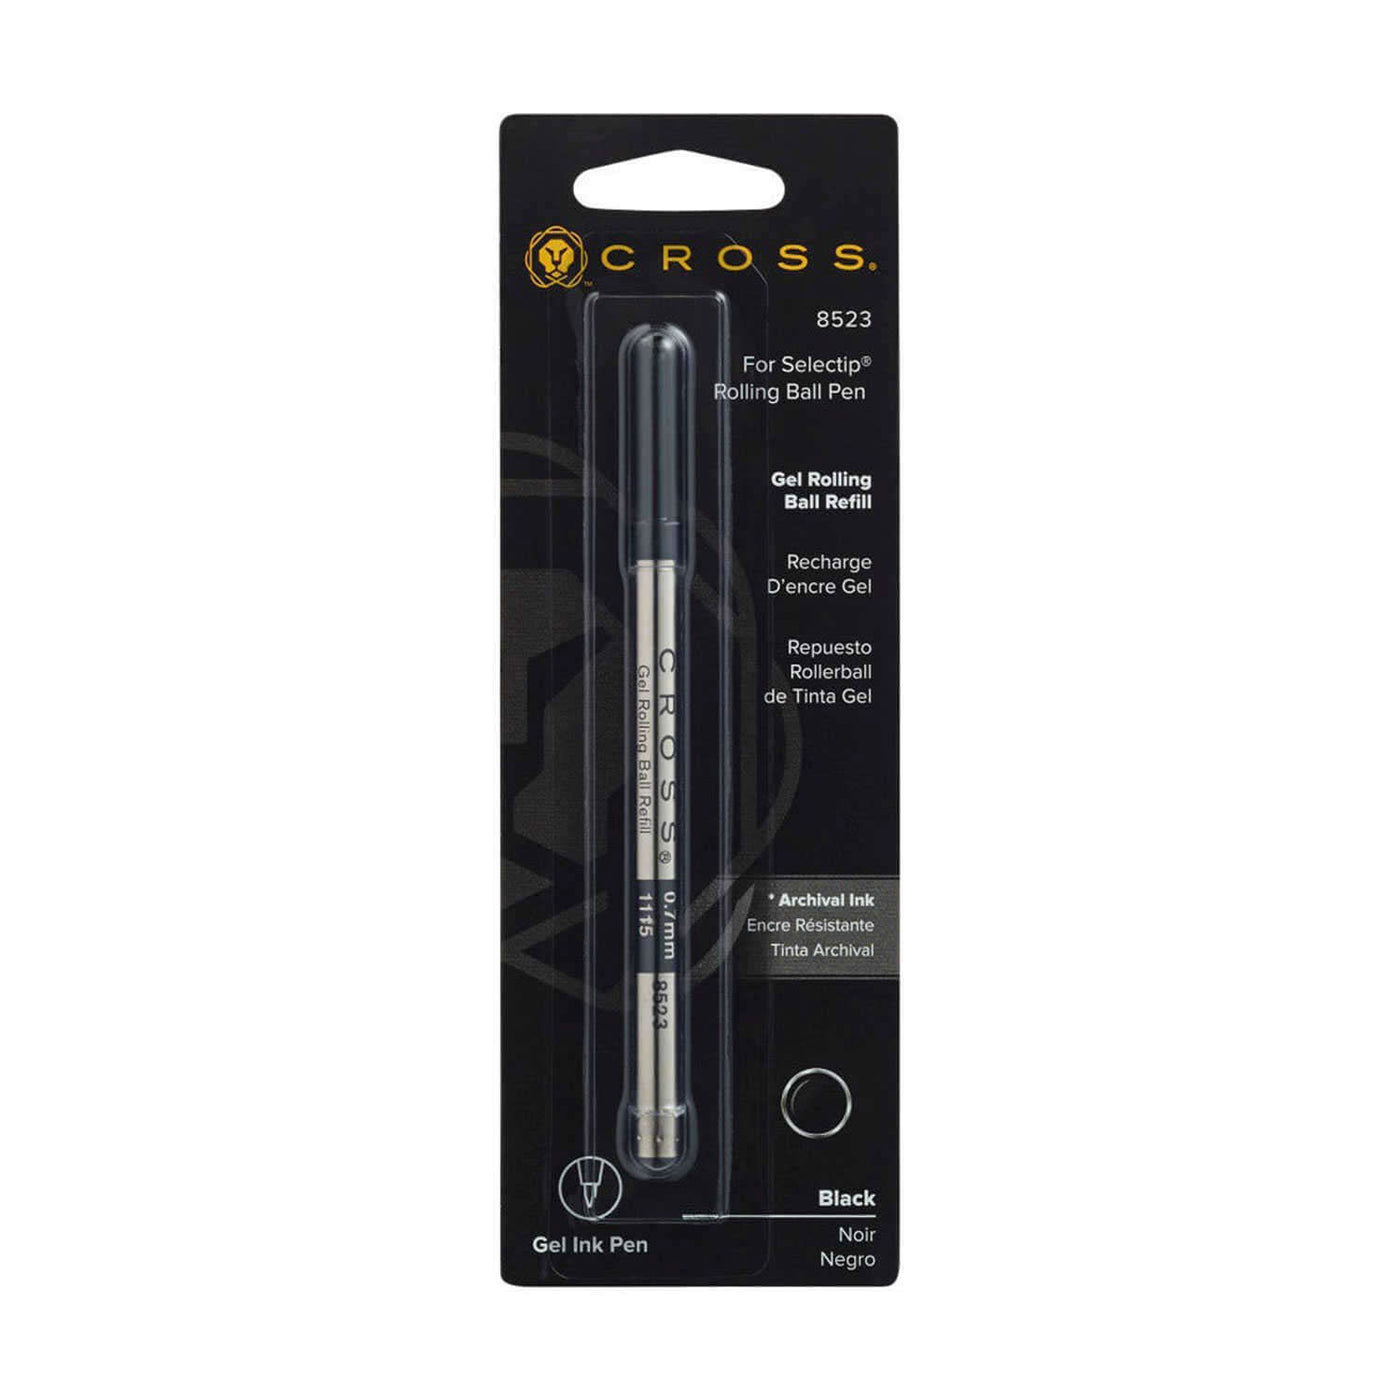 Cross Roller Pen Refill Black Medium